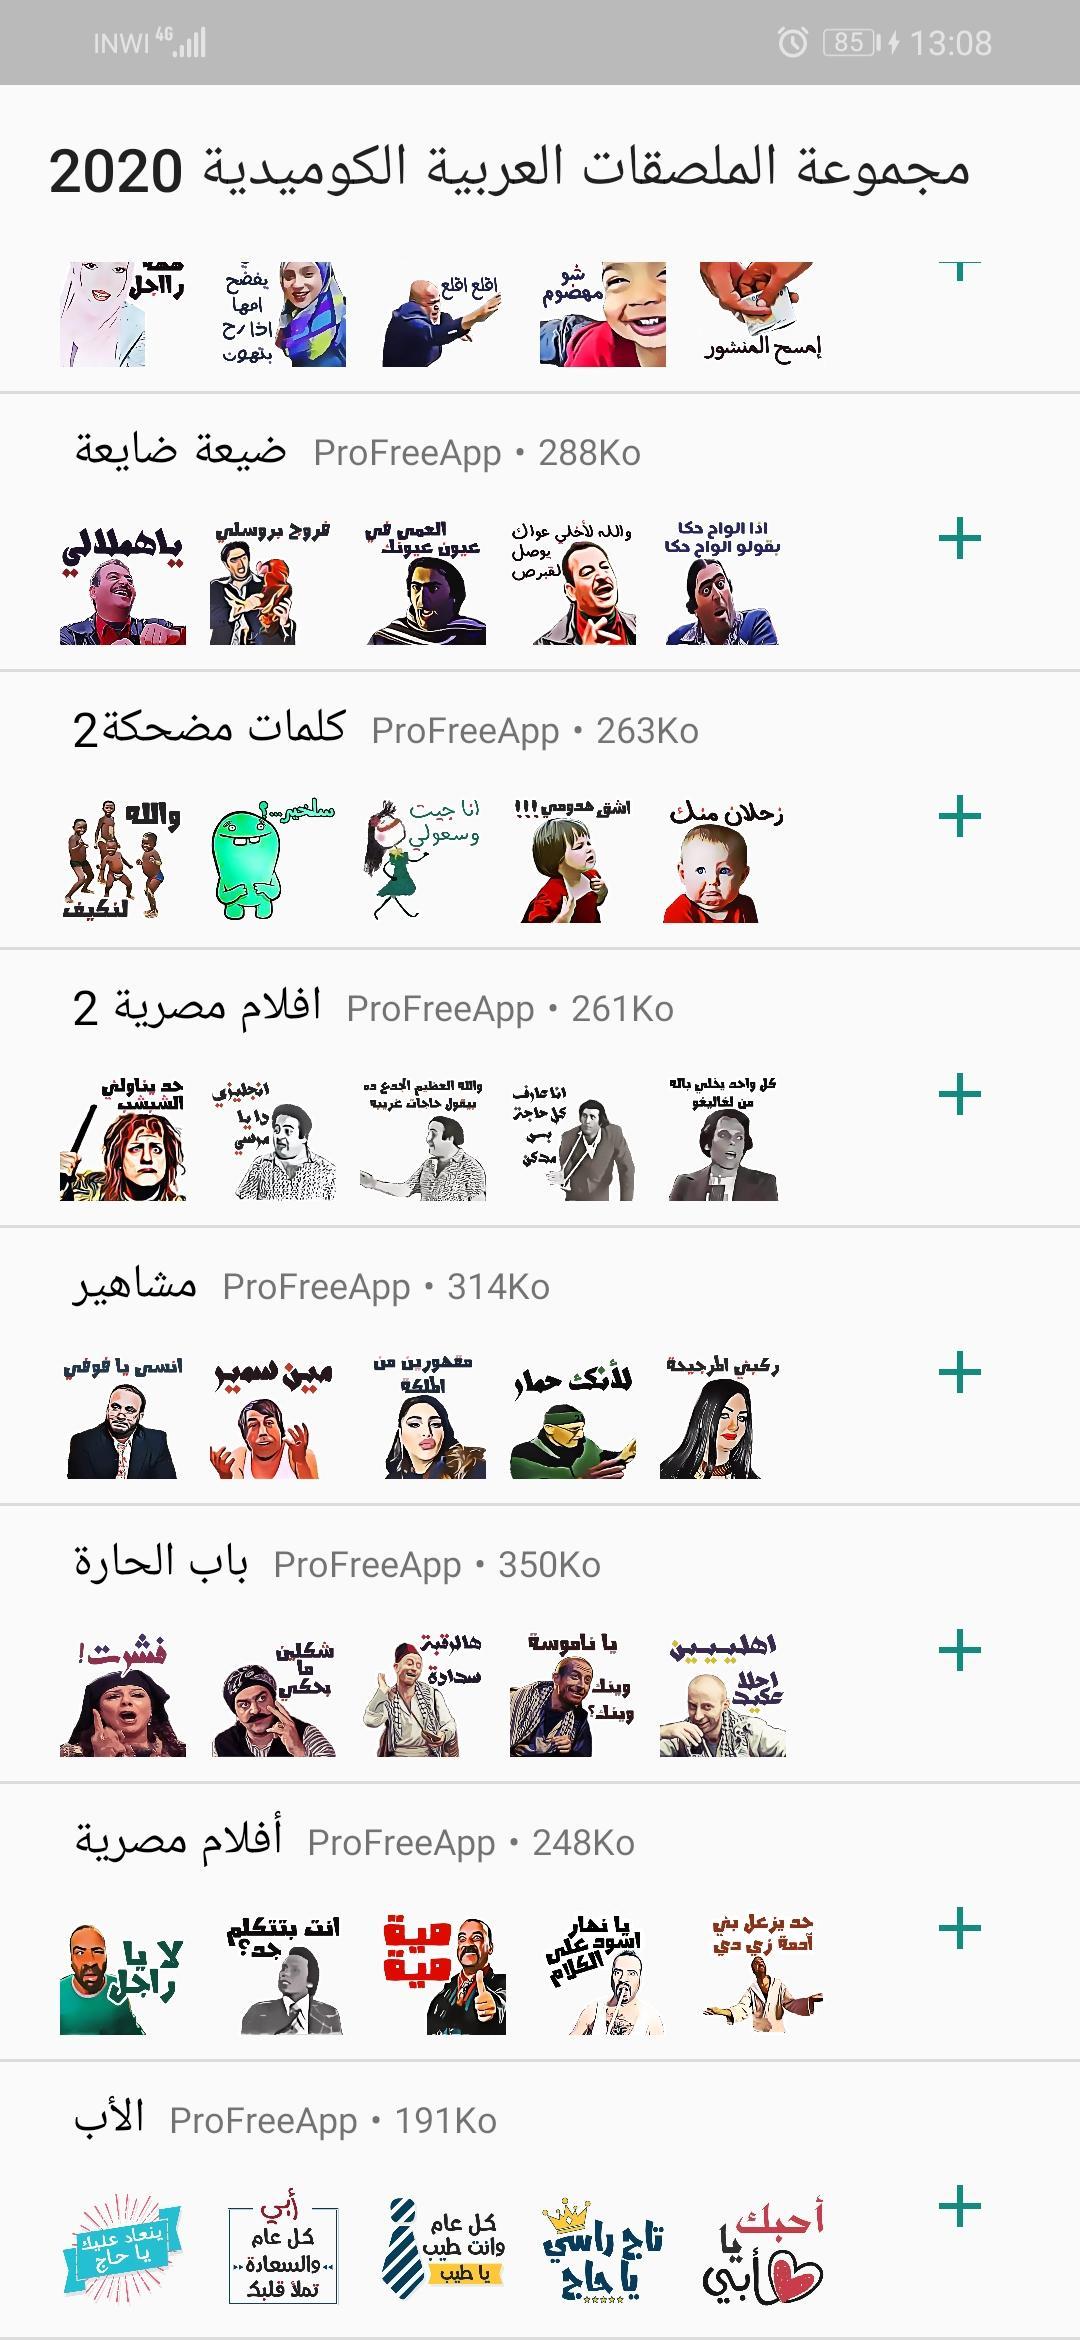 ملصقات واتساب عربية كوميدية 2020 for Android - APK Download